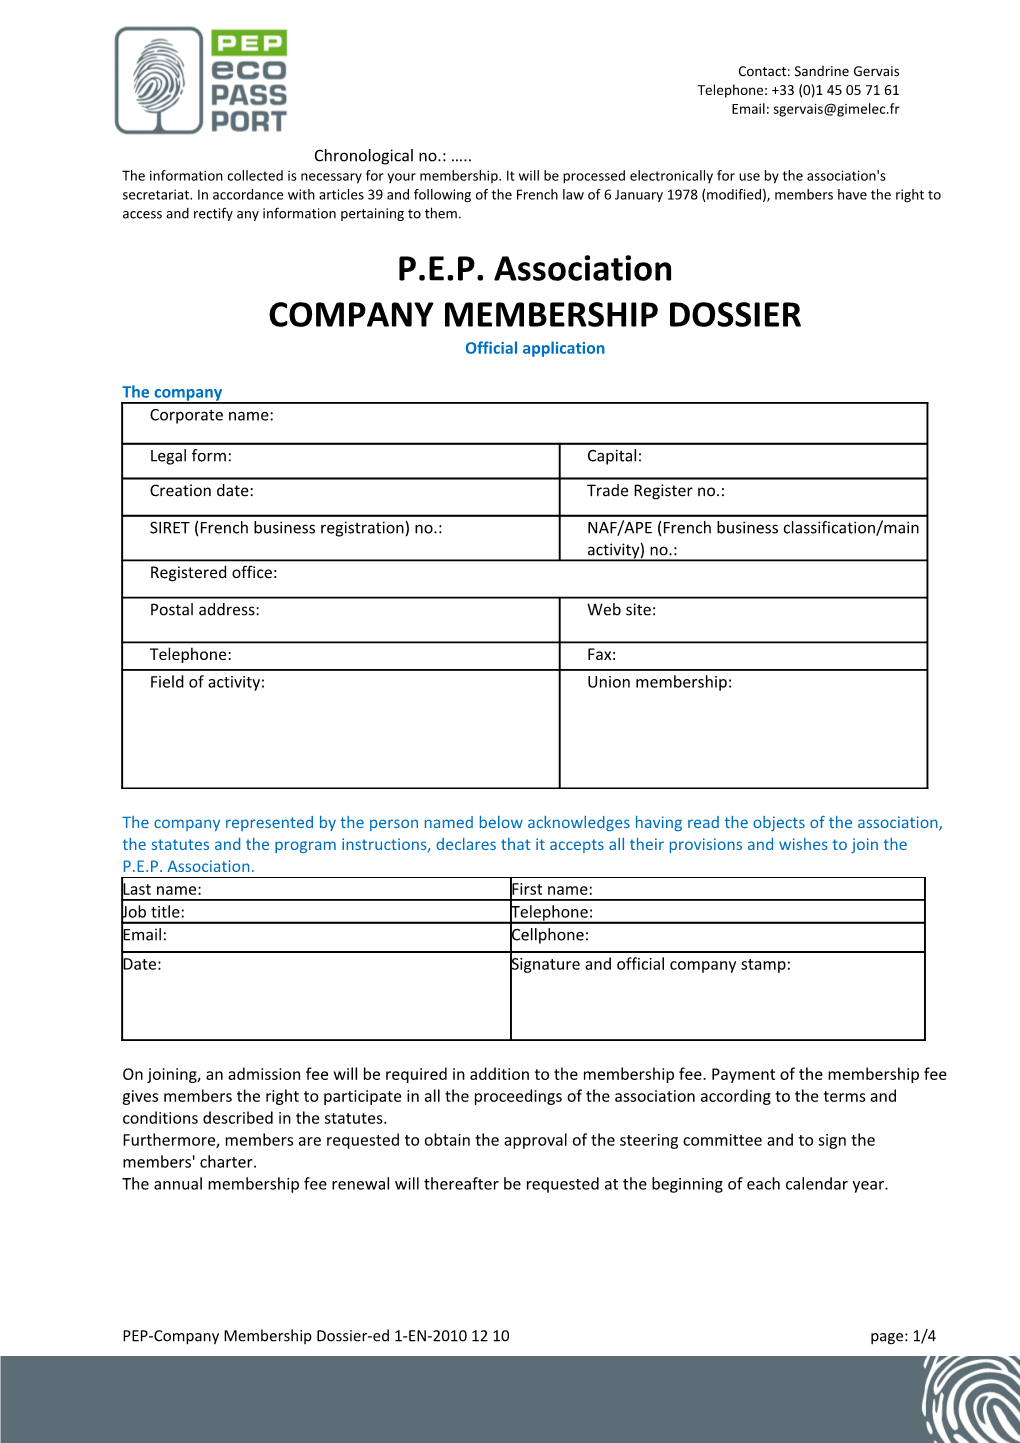 Company Membership Dossier